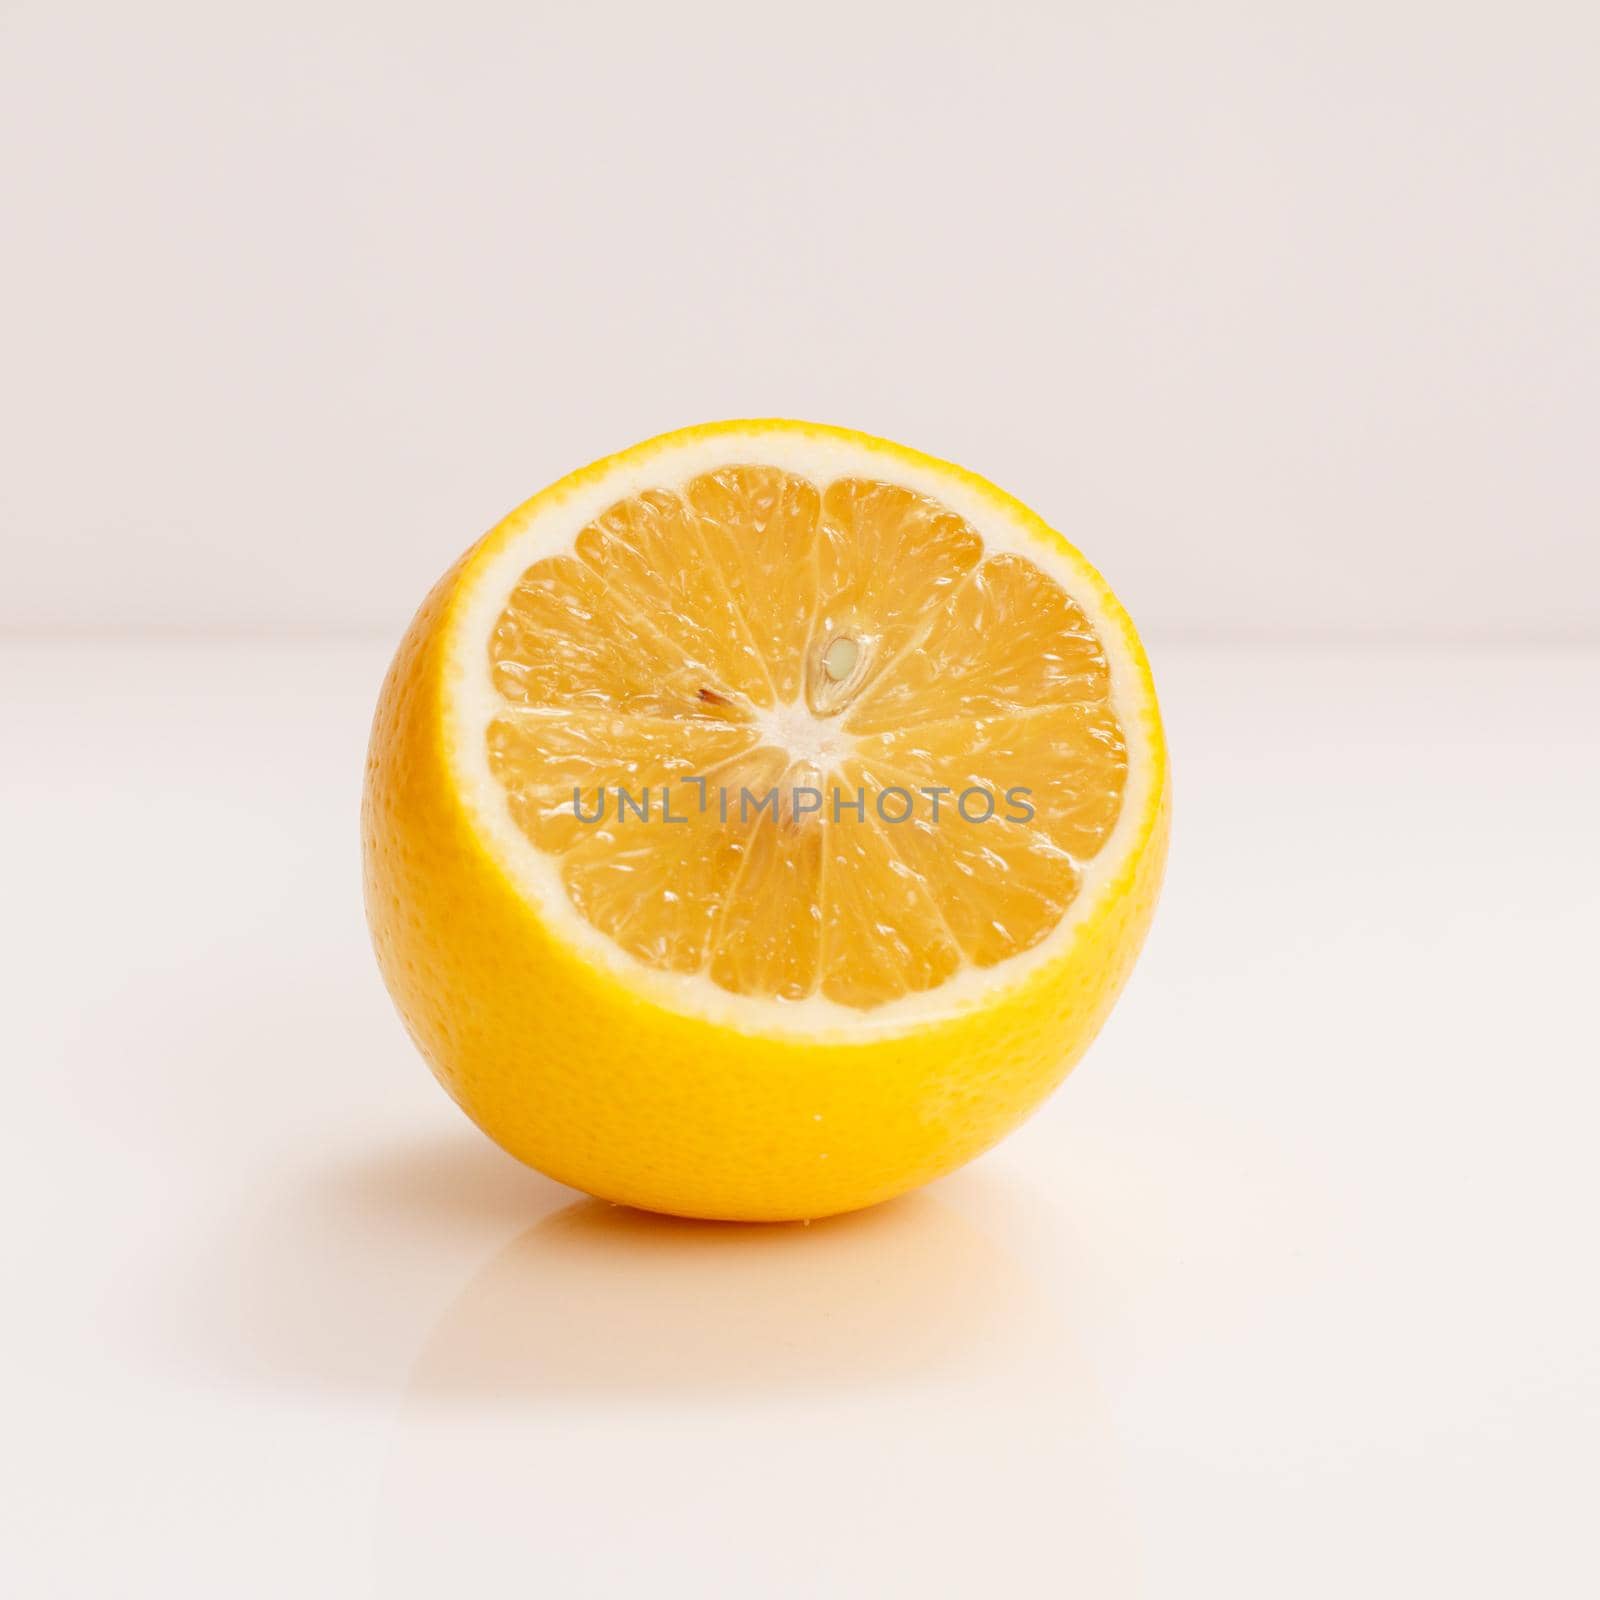 Juicy fresh cut lemon on the white background.